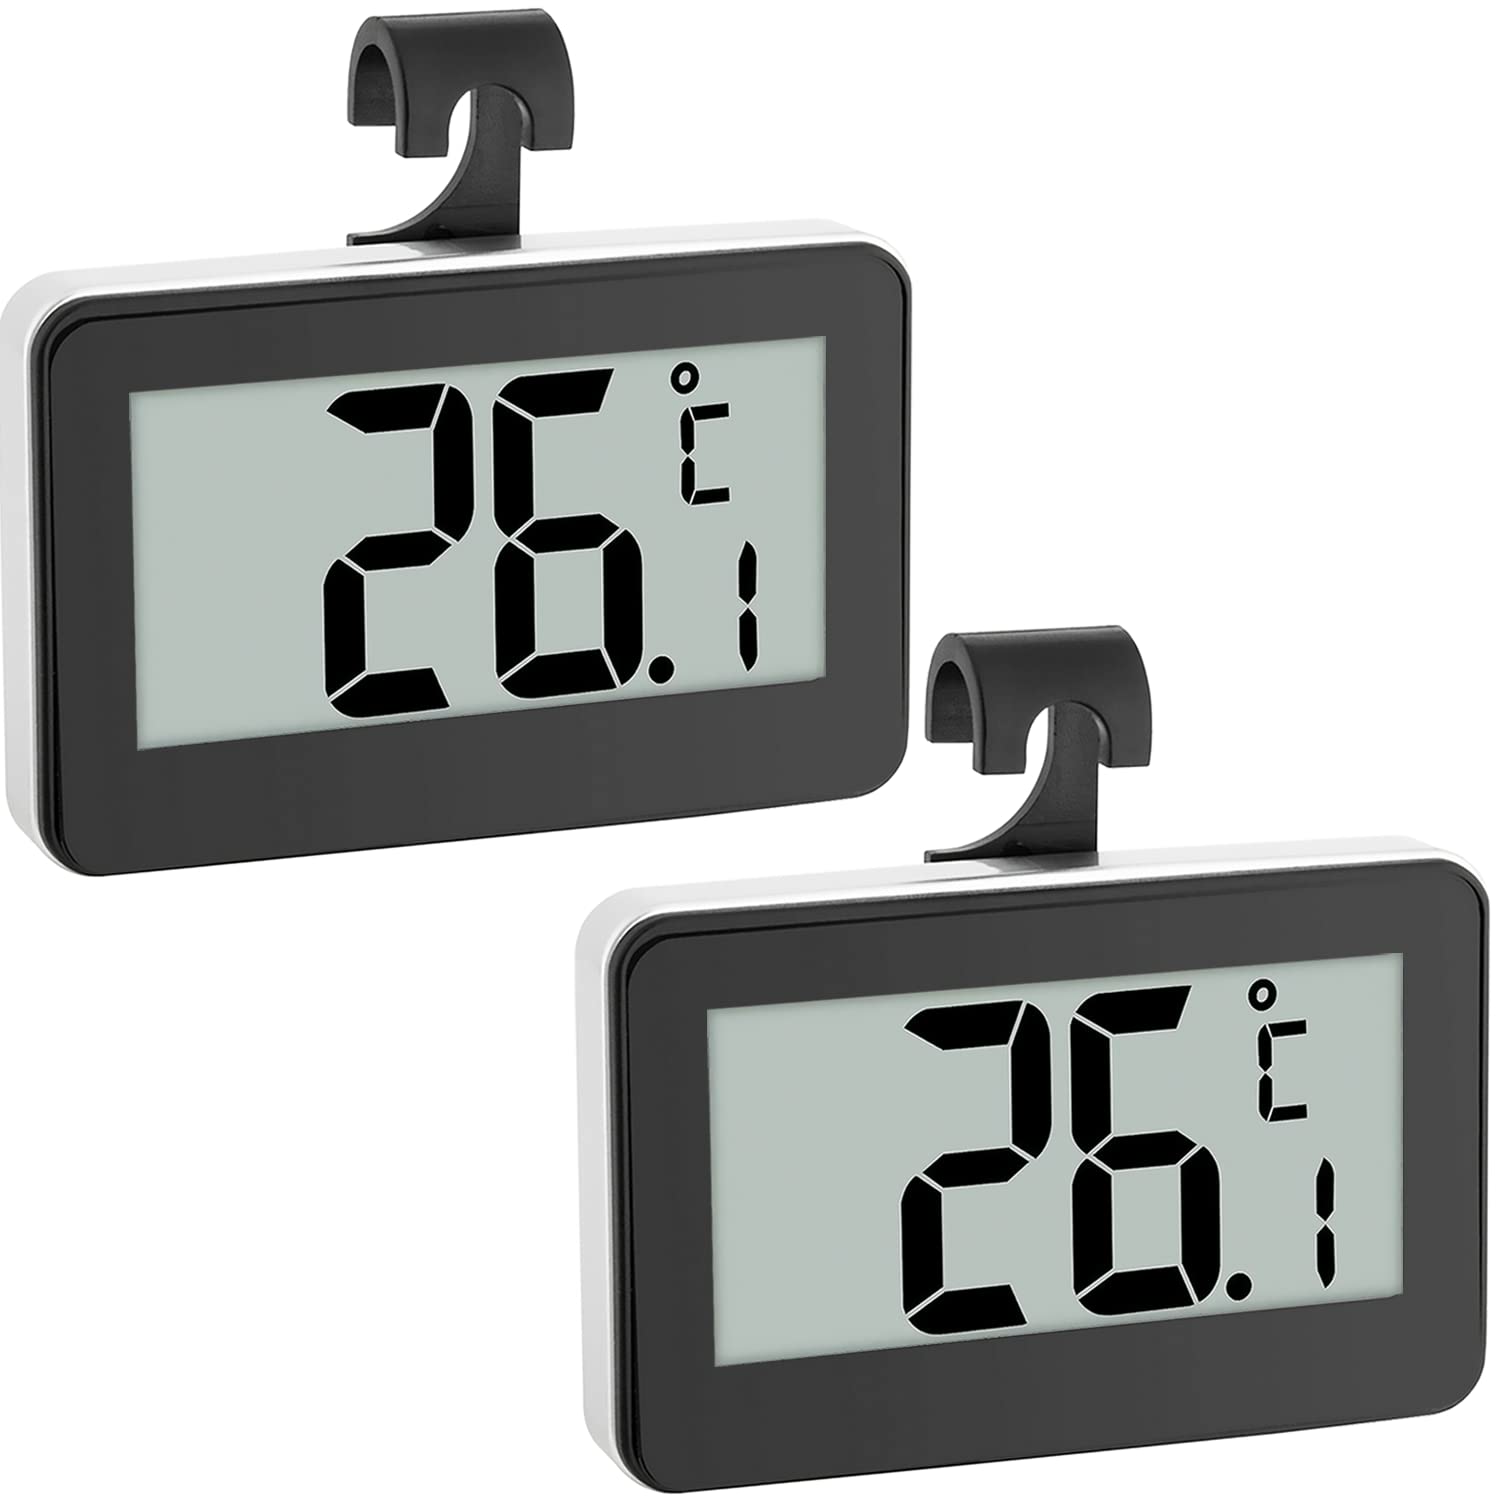 Thermomètre de réfrigérateur numérique, thermomètre de congélateur étanche  avec crochet, écran LCD facile à lire, fonction d'enregistrement max / min,  idéal pour la maison, restaurants A